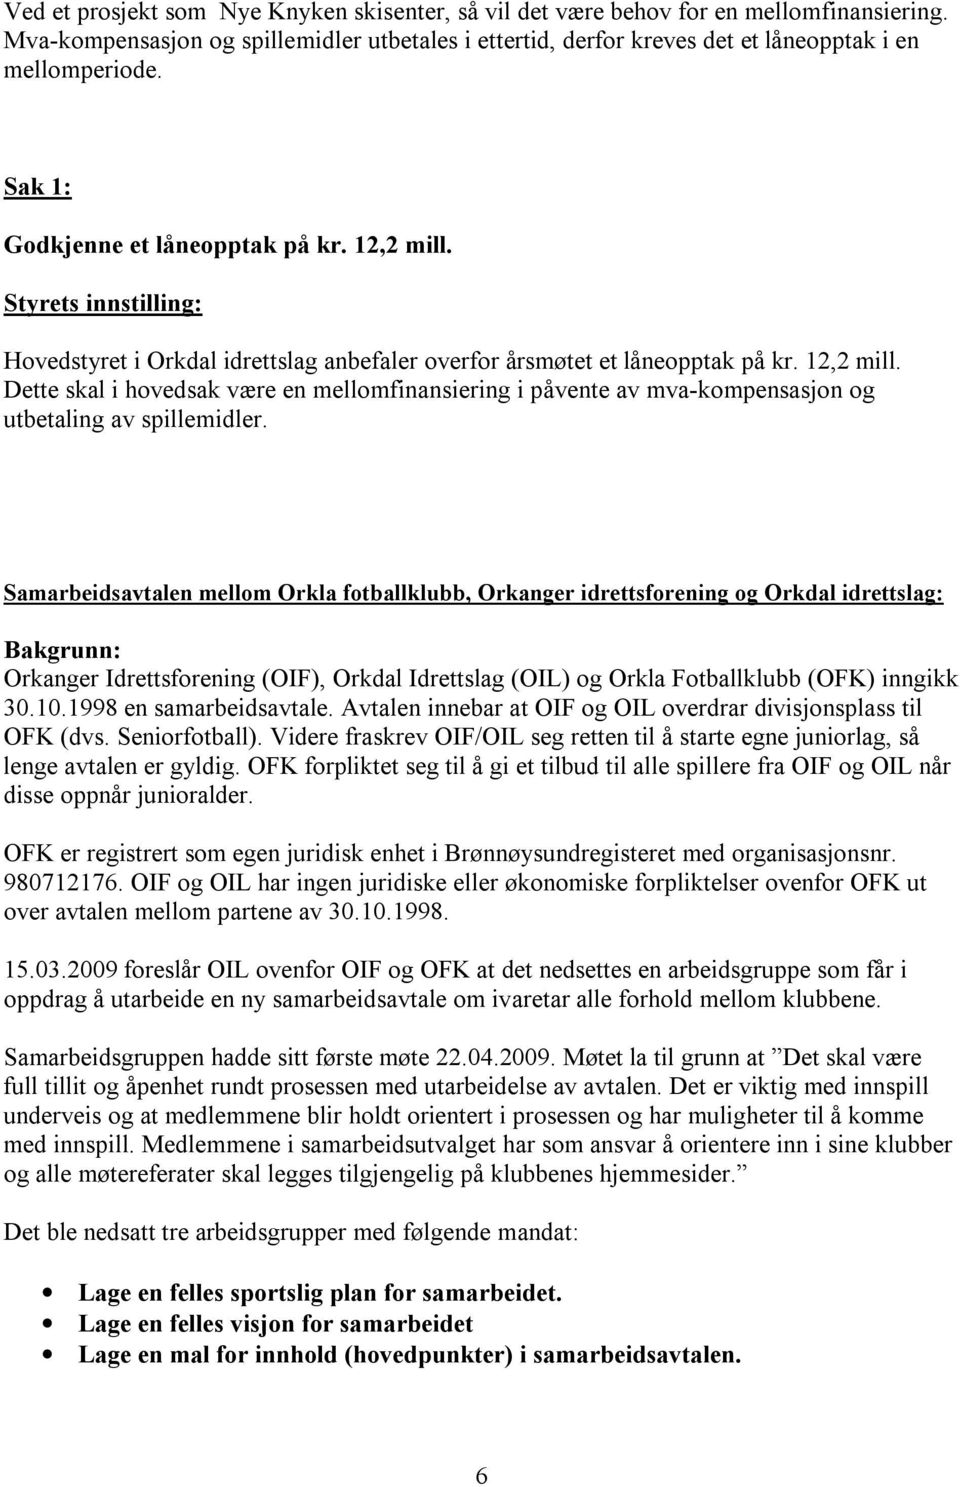 Samarbeidsavtalen mellom Orkla fotballklubb, Orkanger idrettsforening og Orkdal idrettslag: Bakgrunn: Orkanger Idrettsforening (OIF), Orkdal Idrettslag (OIL) og Orkla Fotballklubb (OFK) inngikk 30.10.